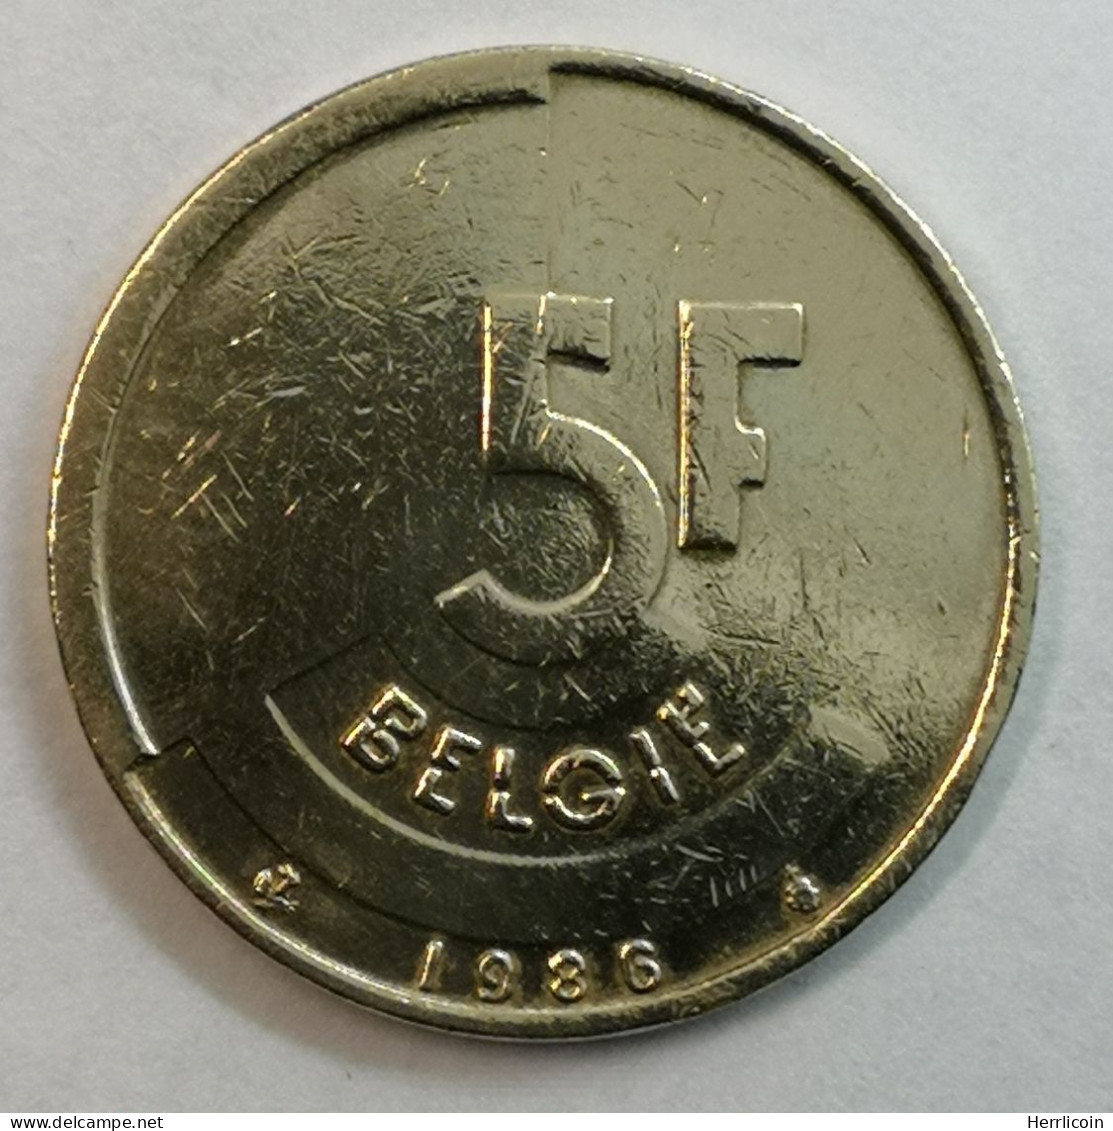 Monnaie Belgique - 1986 - 5 Francs - Baudouin Ier En Néerlandais - 5 Frank